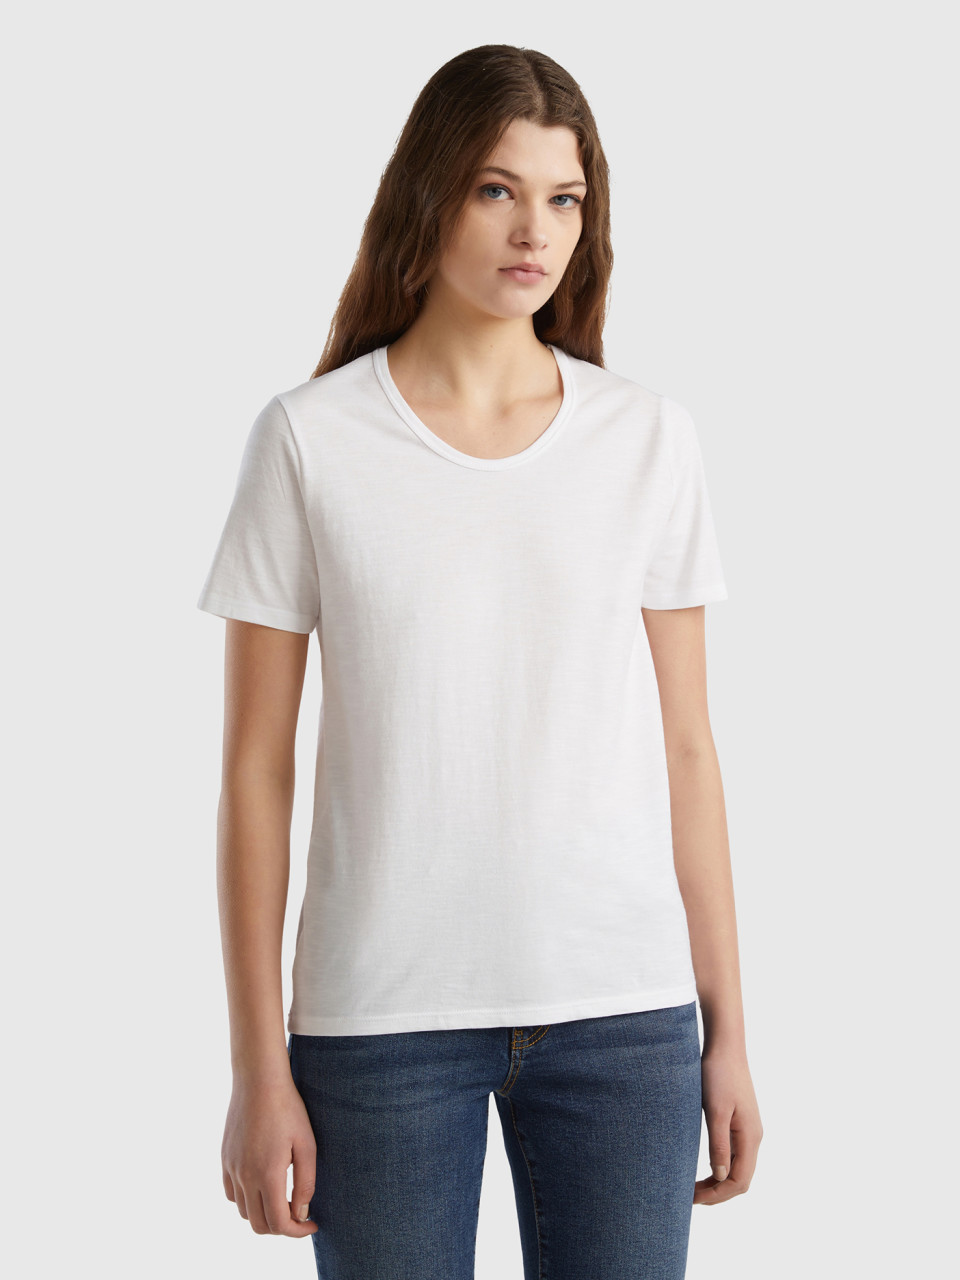 Benetton, Short Sleeve T-shirt Lightweight Cotton, White, Women